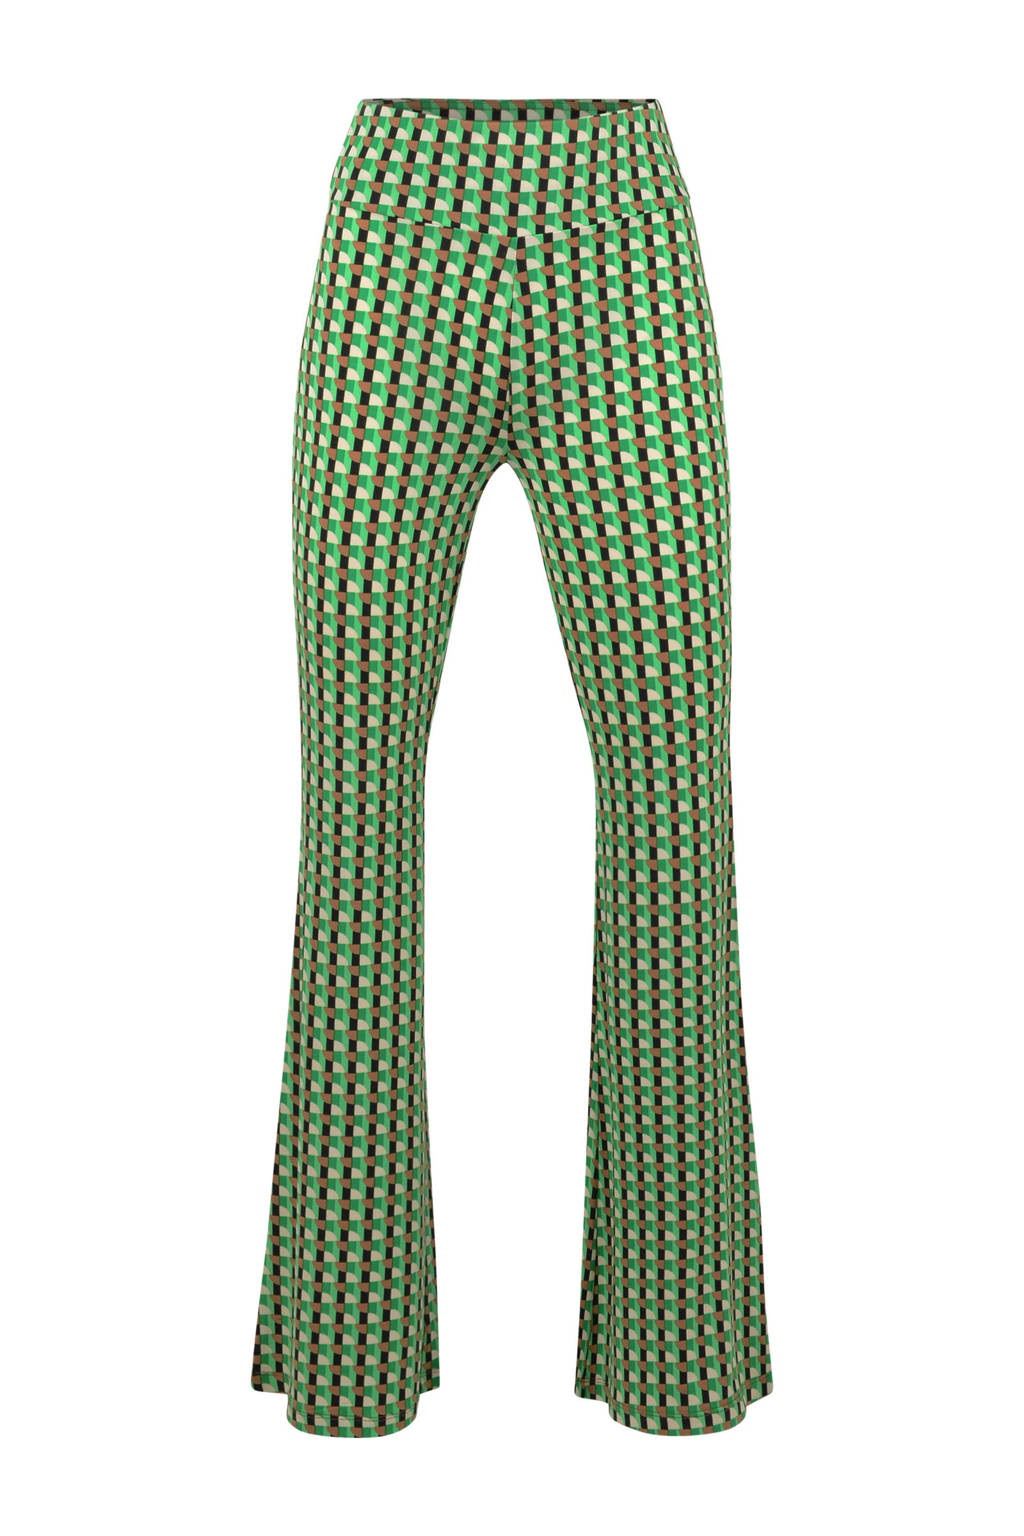 Shoeby Eksept high waist flared broek Retro met grafische print groen/bruin/zwart/gebroken | wehkamp